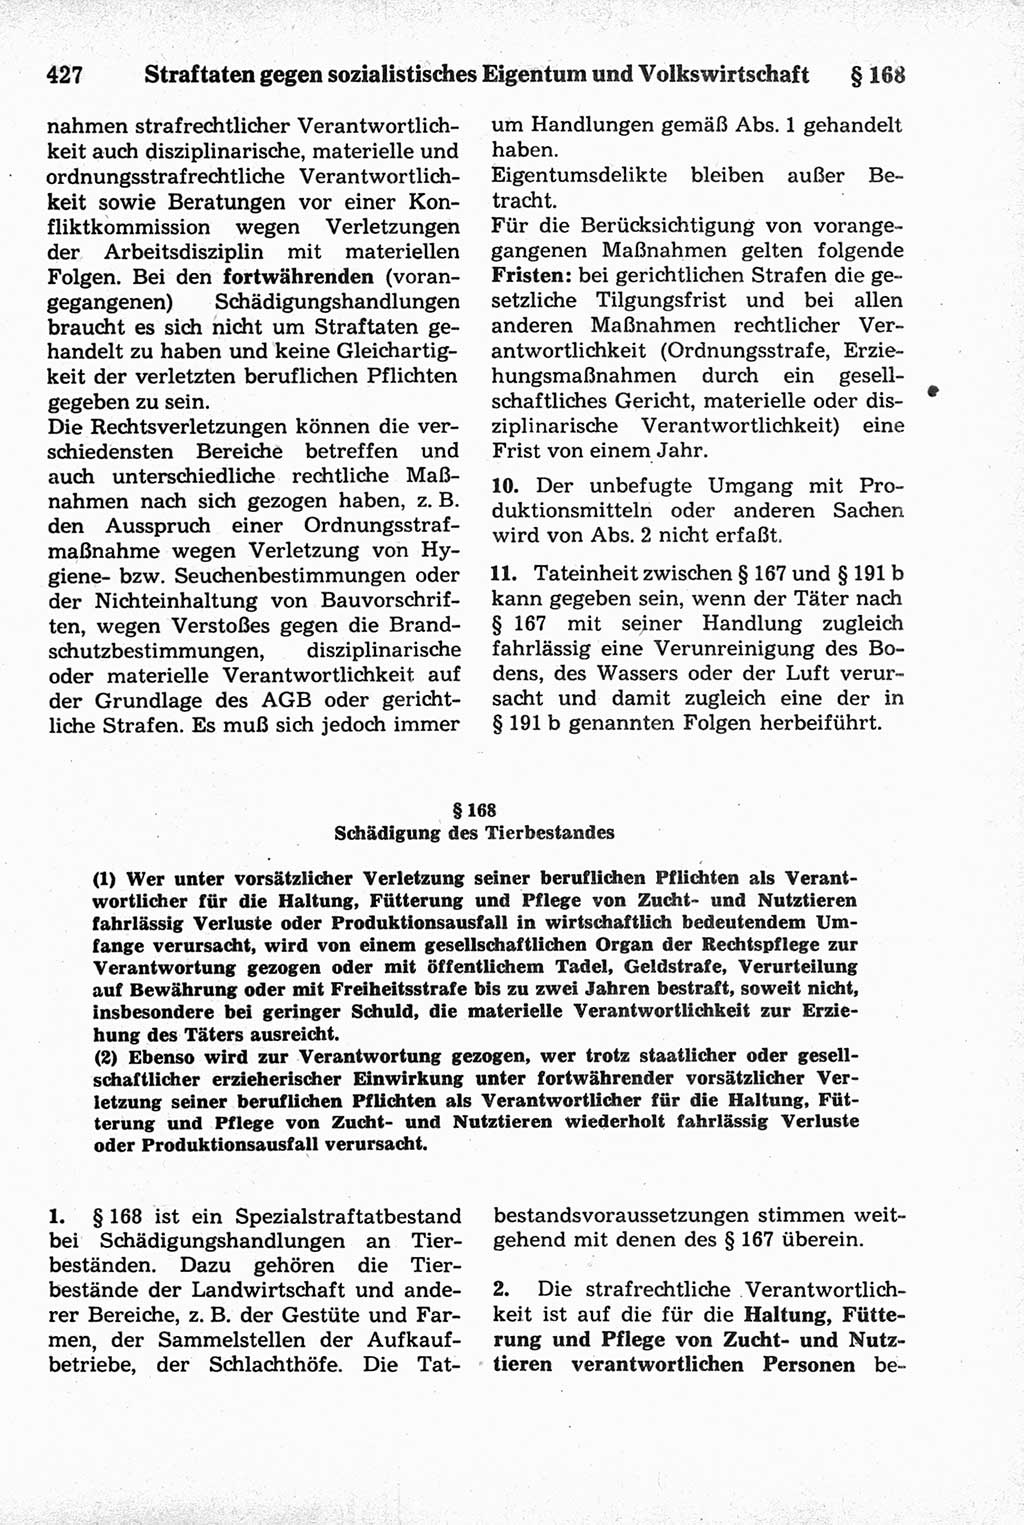 Strafrecht der Deutschen Demokratischen Republik (DDR), Kommentar zum Strafgesetzbuch (StGB) 1981, Seite 427 (Strafr. DDR Komm. StGB 1981, S. 427)